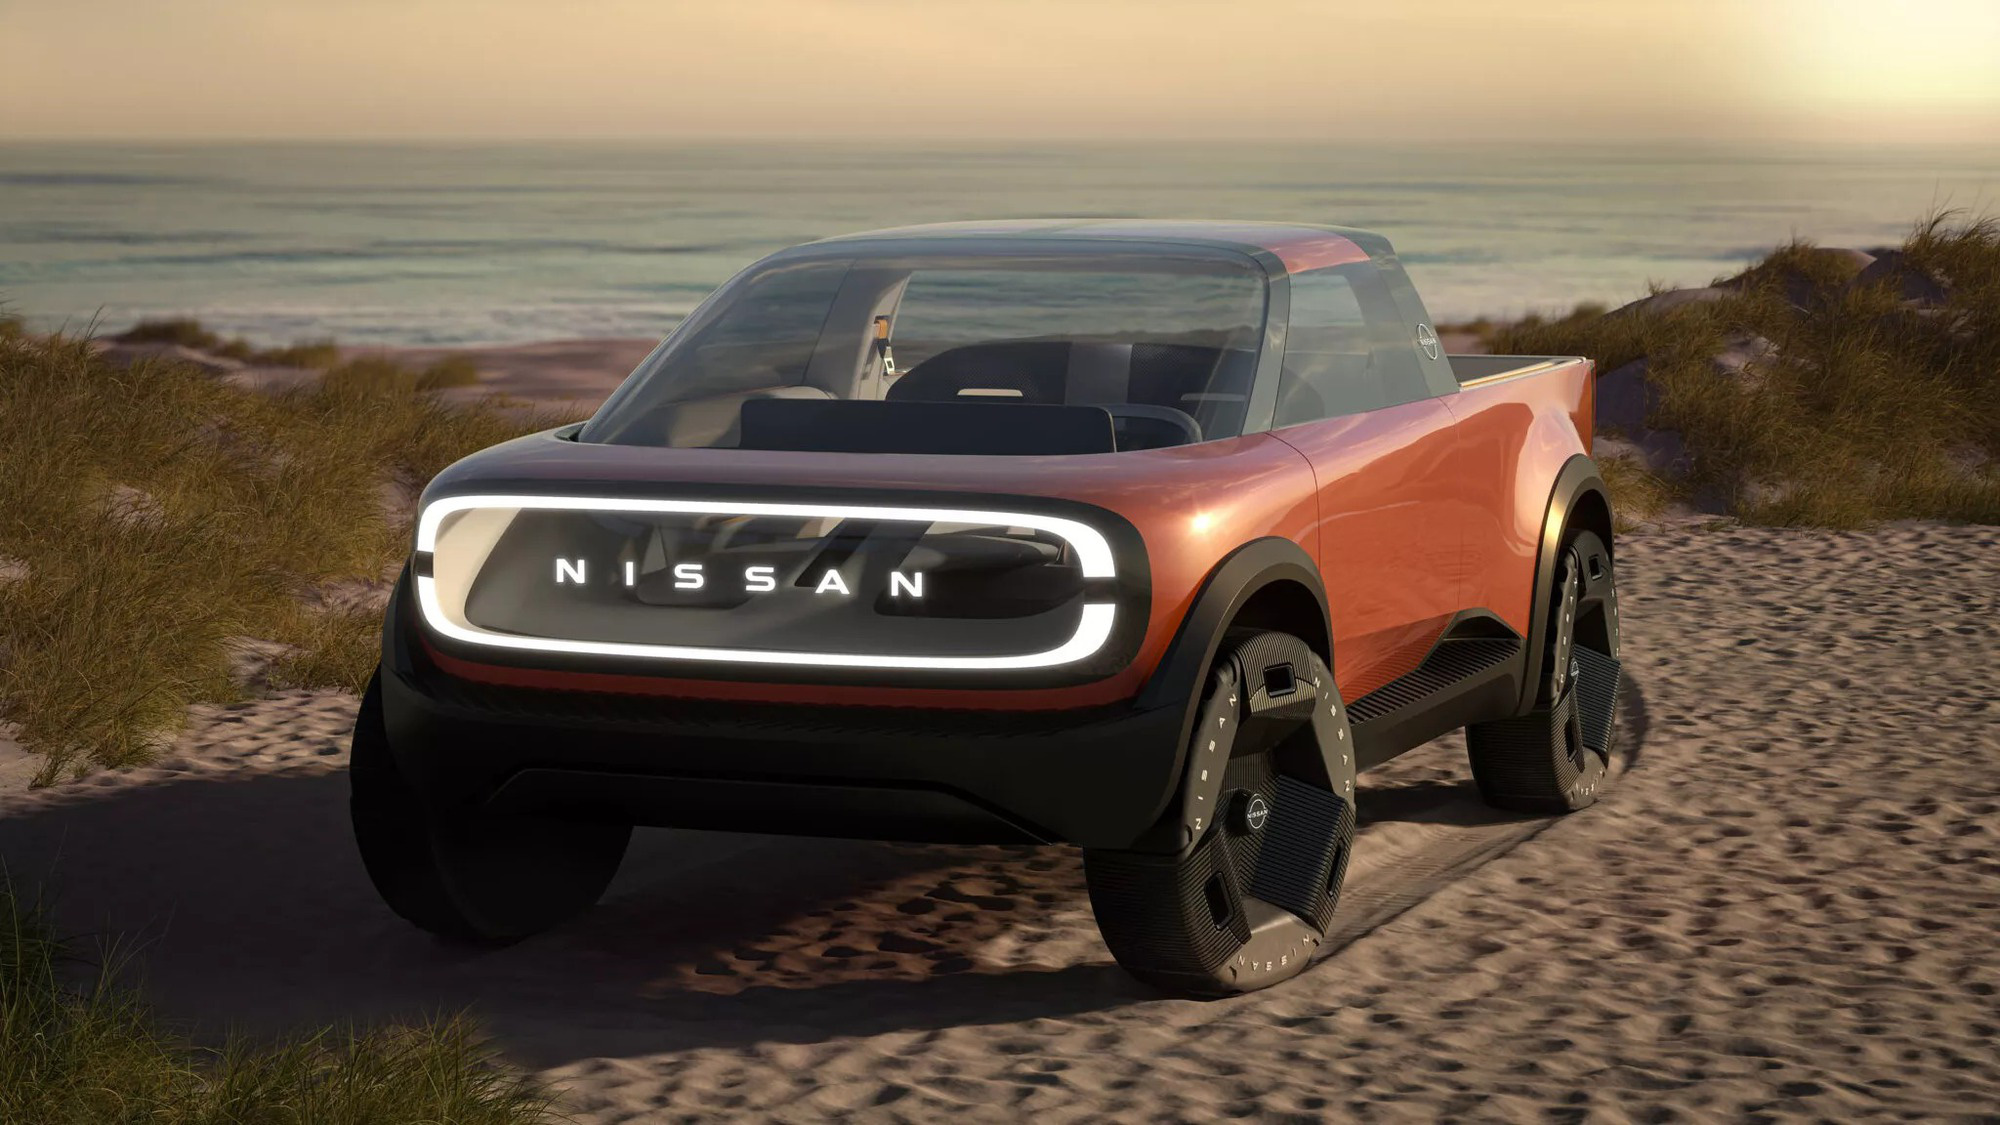 Xem trước bán tải điện Nissan đấu Ford Ranger: Nhiều chi tiết dễ bị lược bỏ khi bán ra - Ảnh 2.